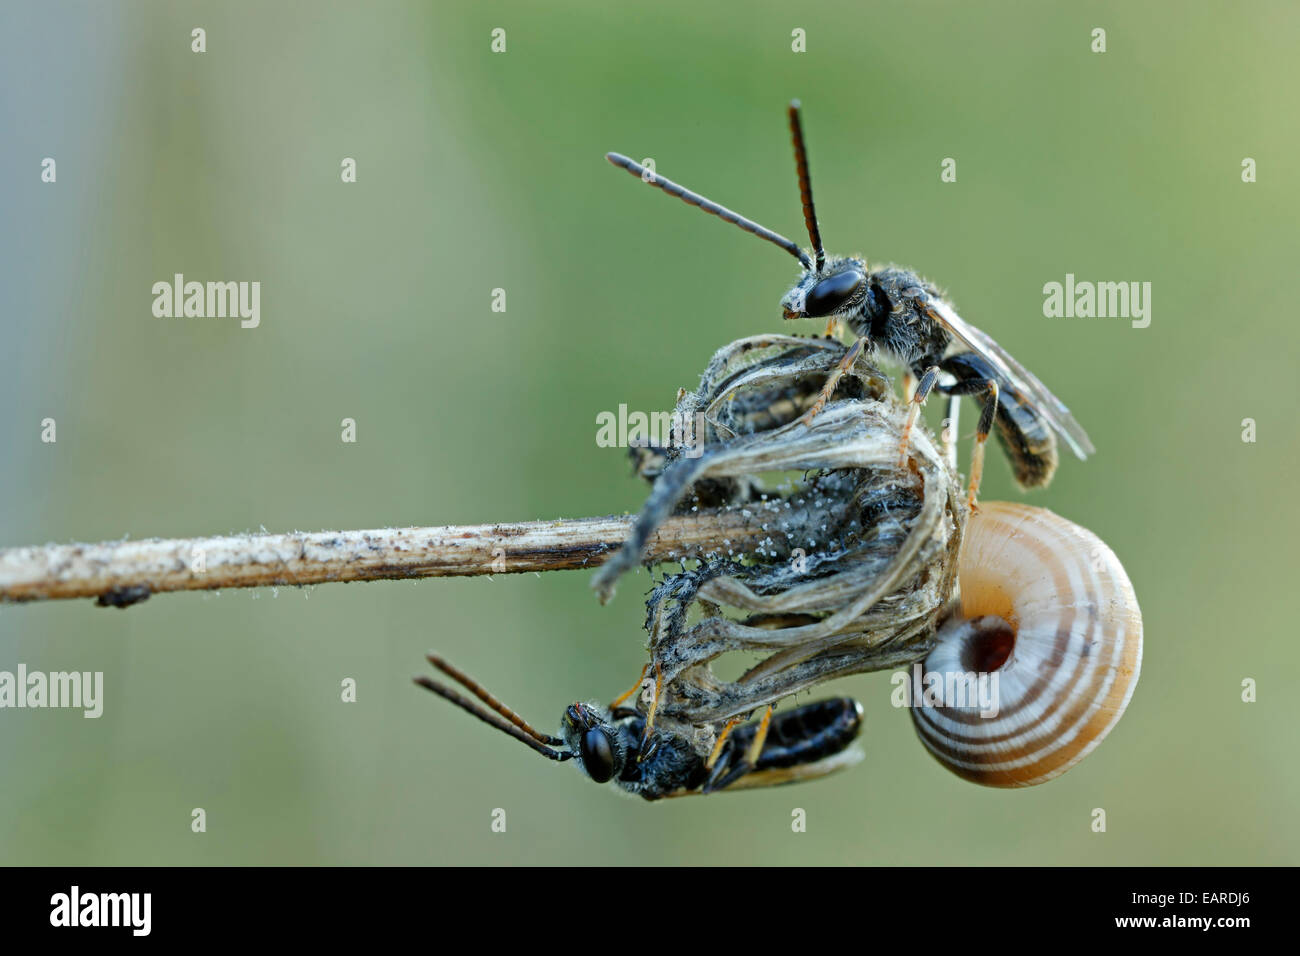 Sudor abejas fotografías e imágenes de alta resolución - Alamy